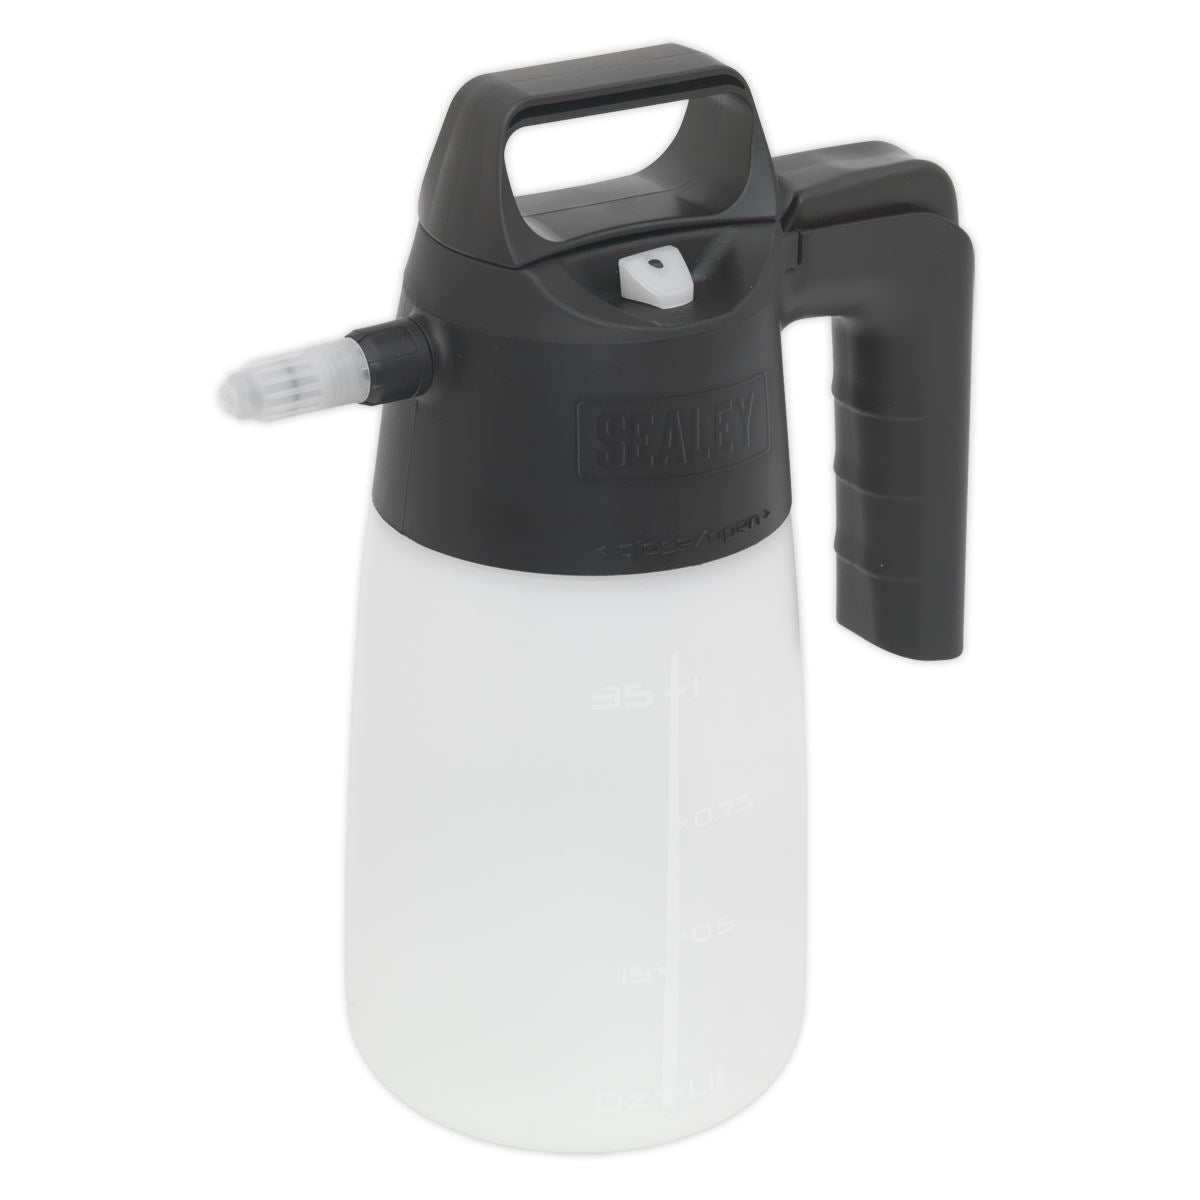 Sealey Premier Premier Industrial Detergent Pressure Sprayer